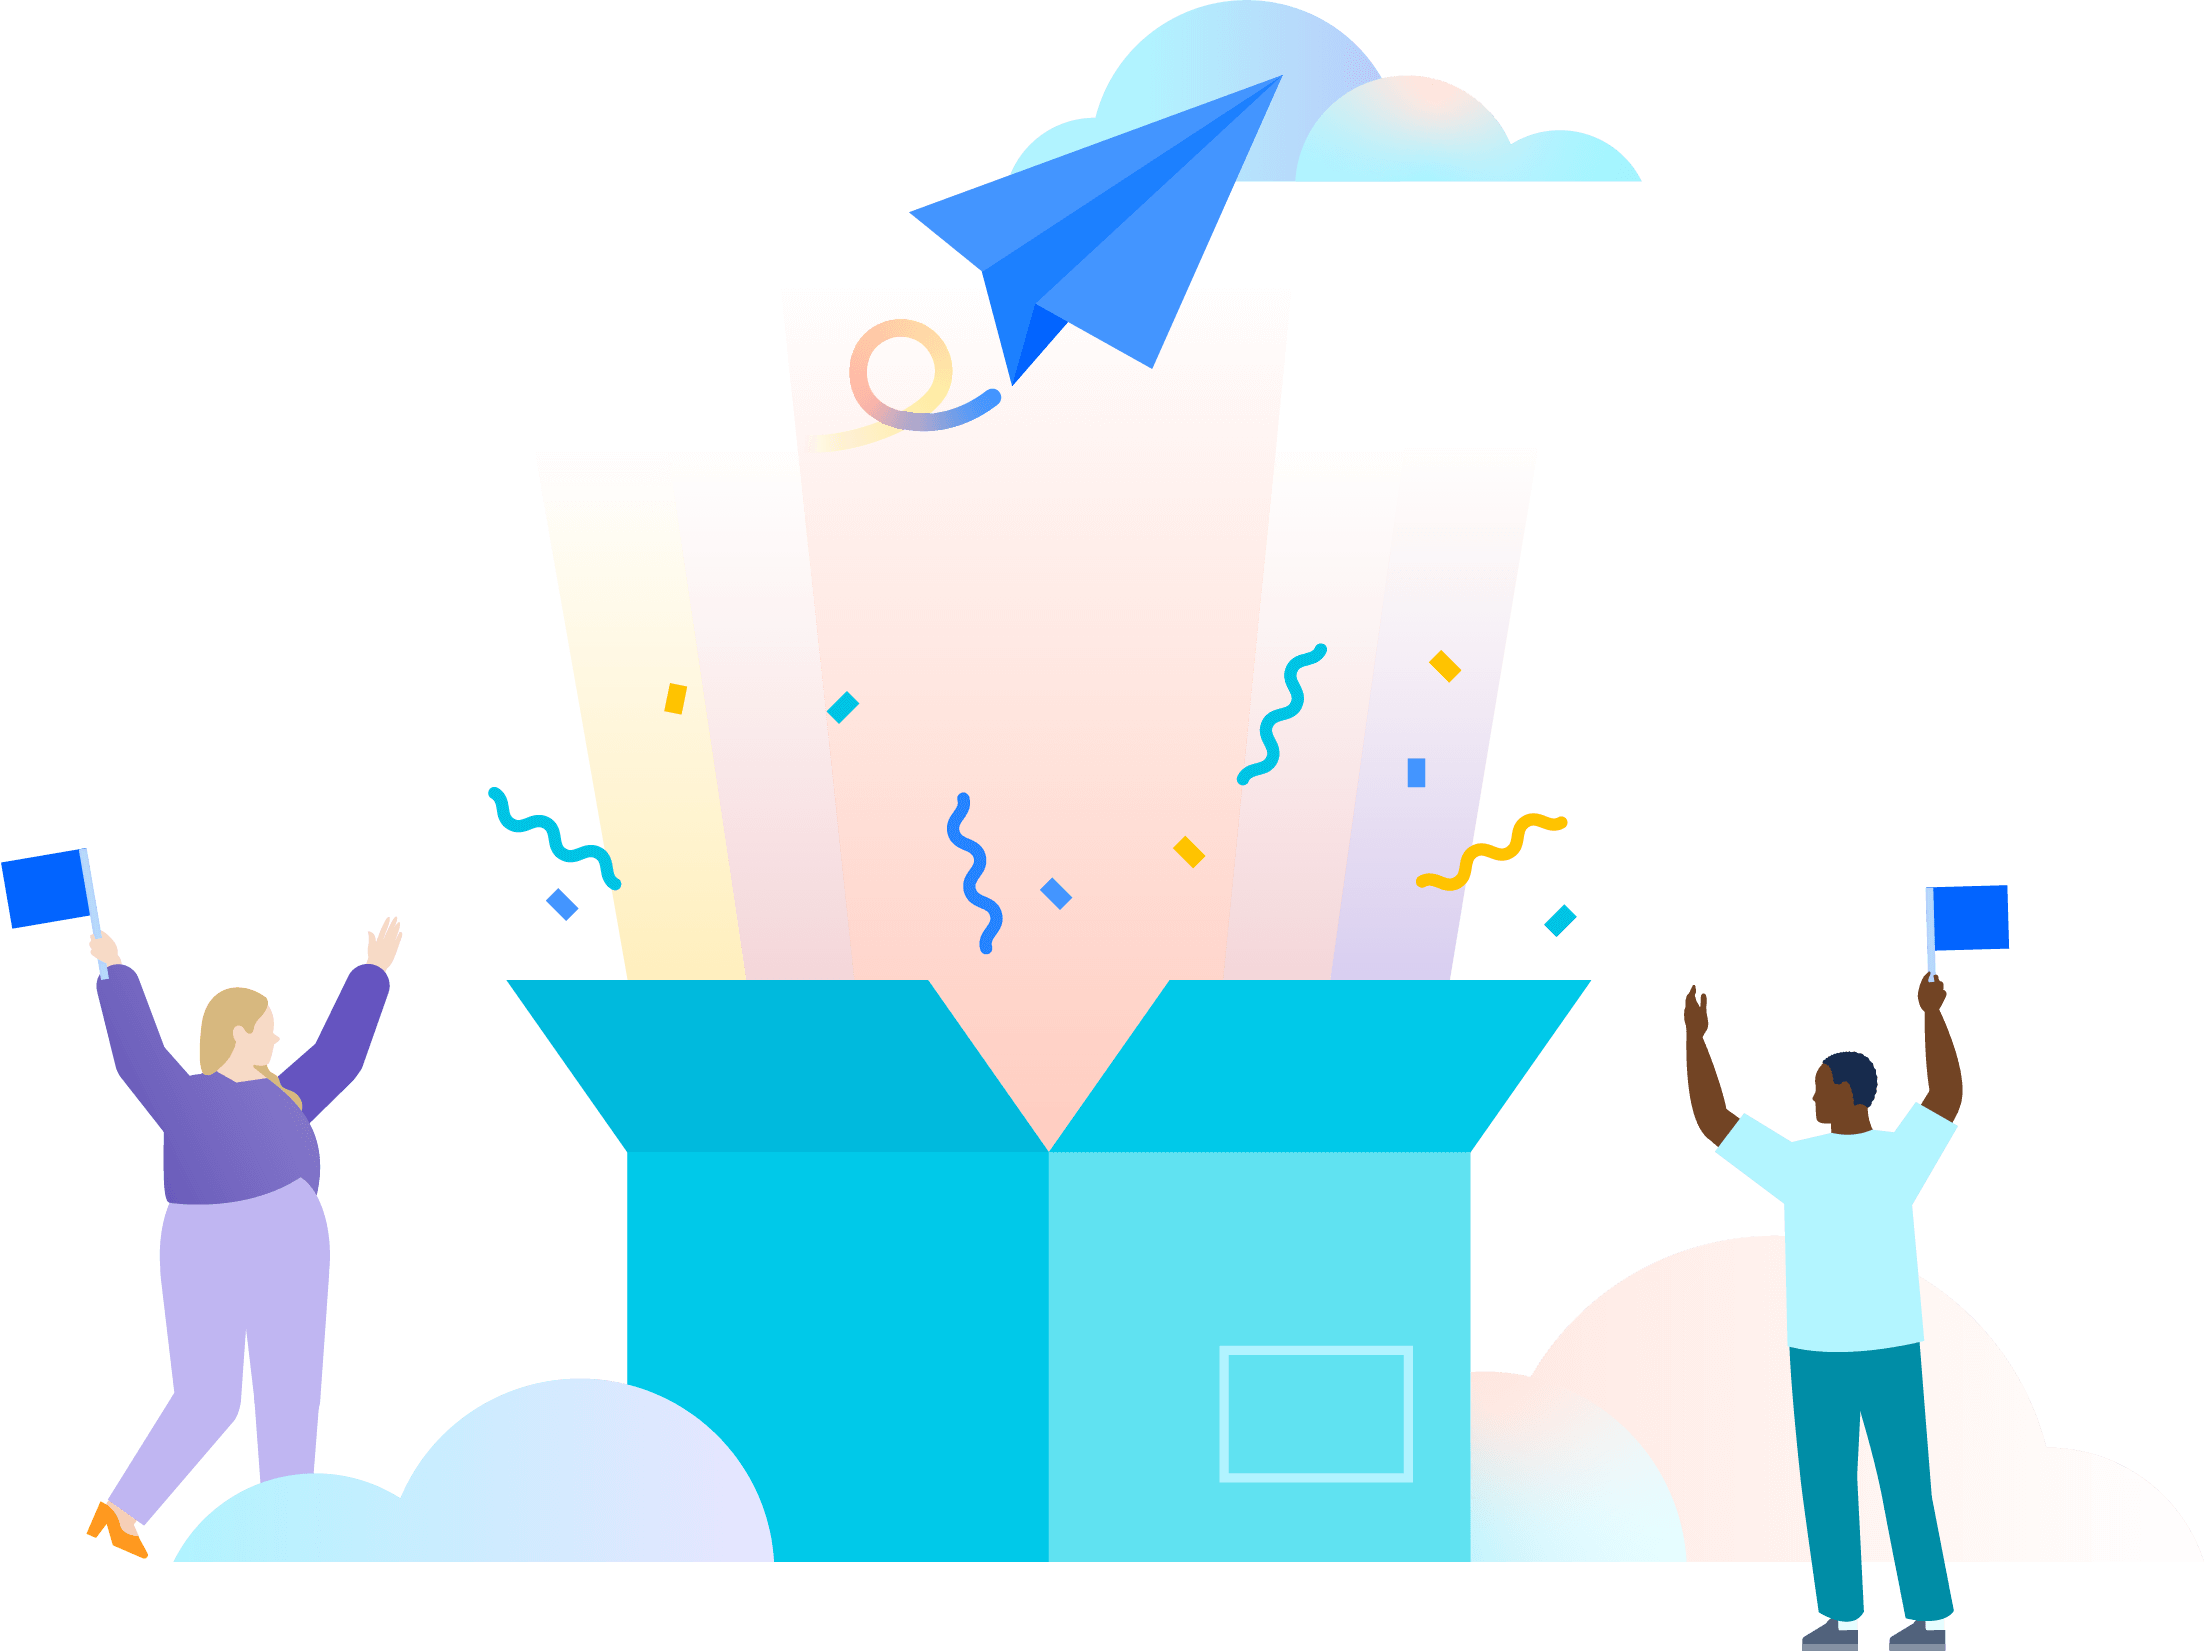 Két ember illusztrációja, akik egy túlméretezett, türkizkék doboz kinyitását ünneplik, amely sokszínű fénysugarakat, konfettit és egy felhők felé tartó papírrepülőt enged szabadjára.